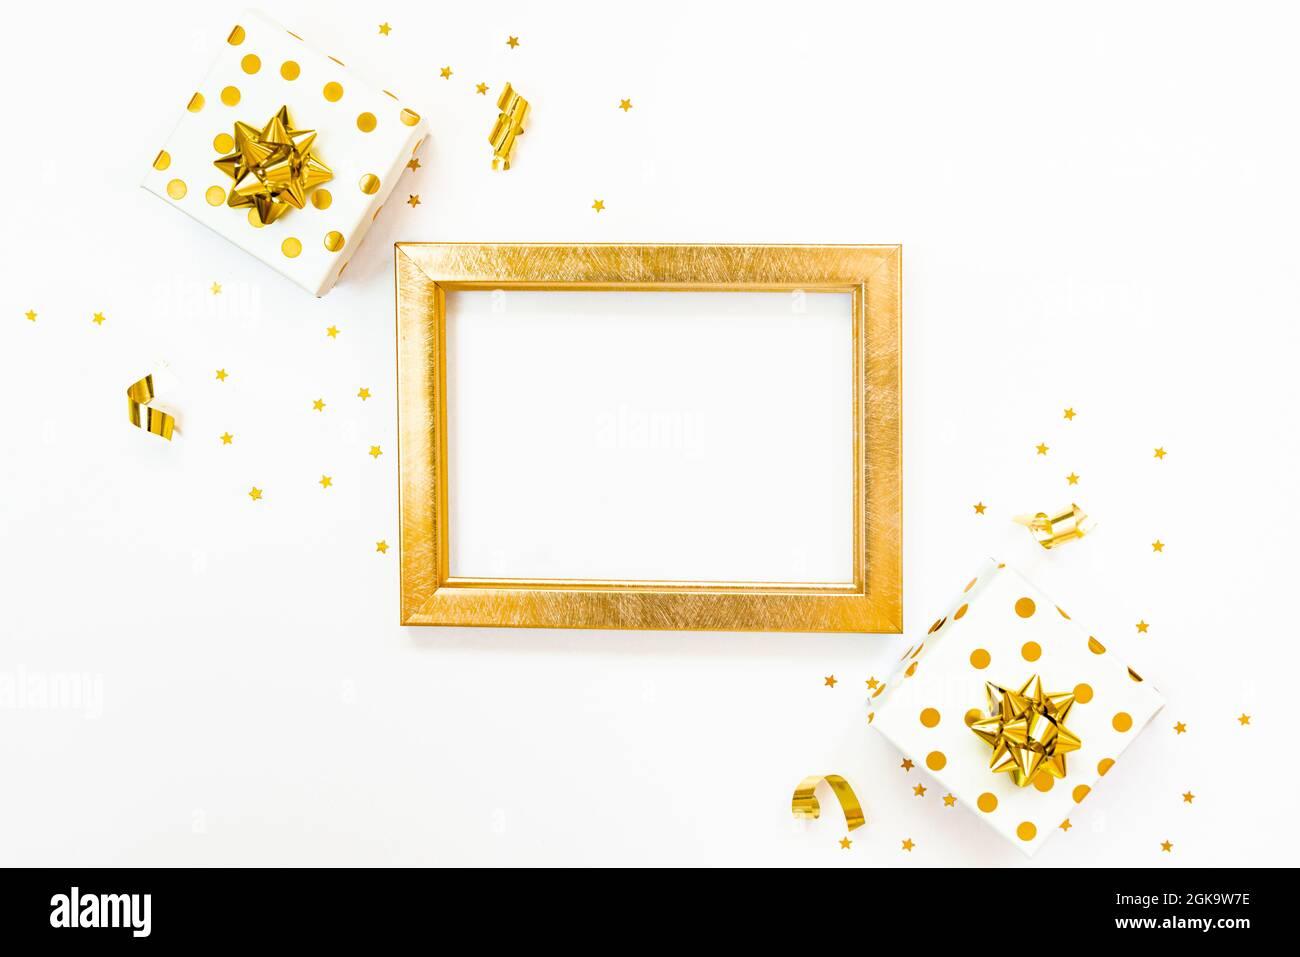 Vue de dessus des boîtes-cadeaux en pointillés dorés et du cadre vide doré sur fond blanc. Espace de copie, maquette. Banque D'Images